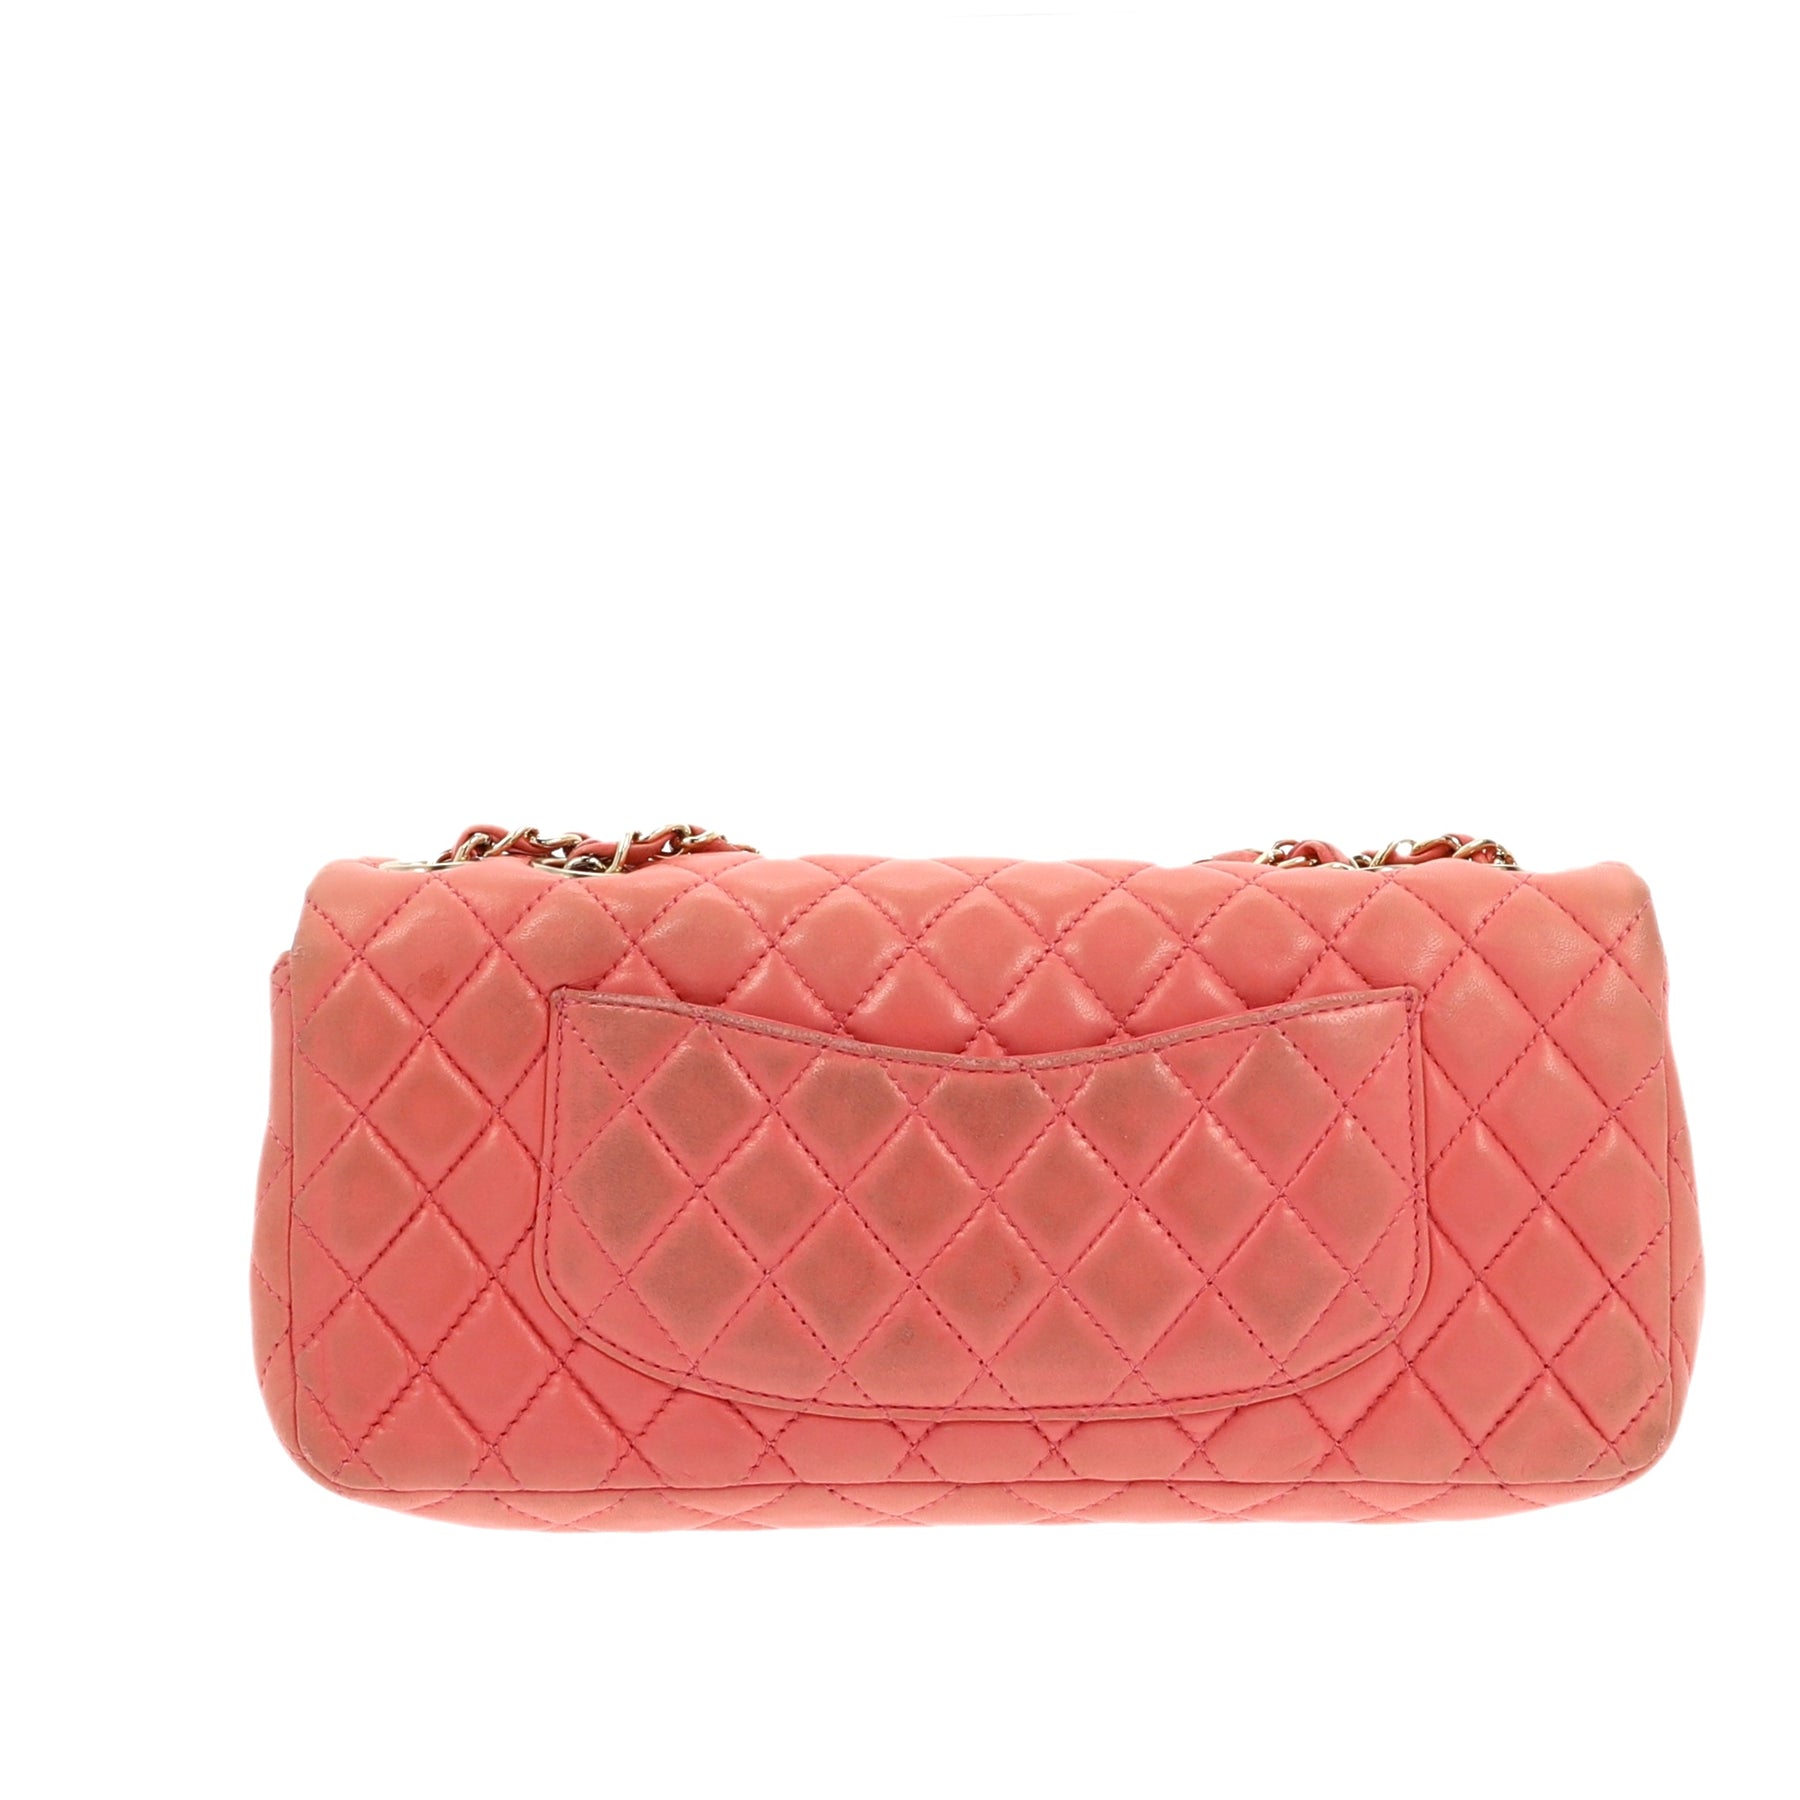 Chanel Wallet On Chain Timeless/Classique velvet crossbody bag